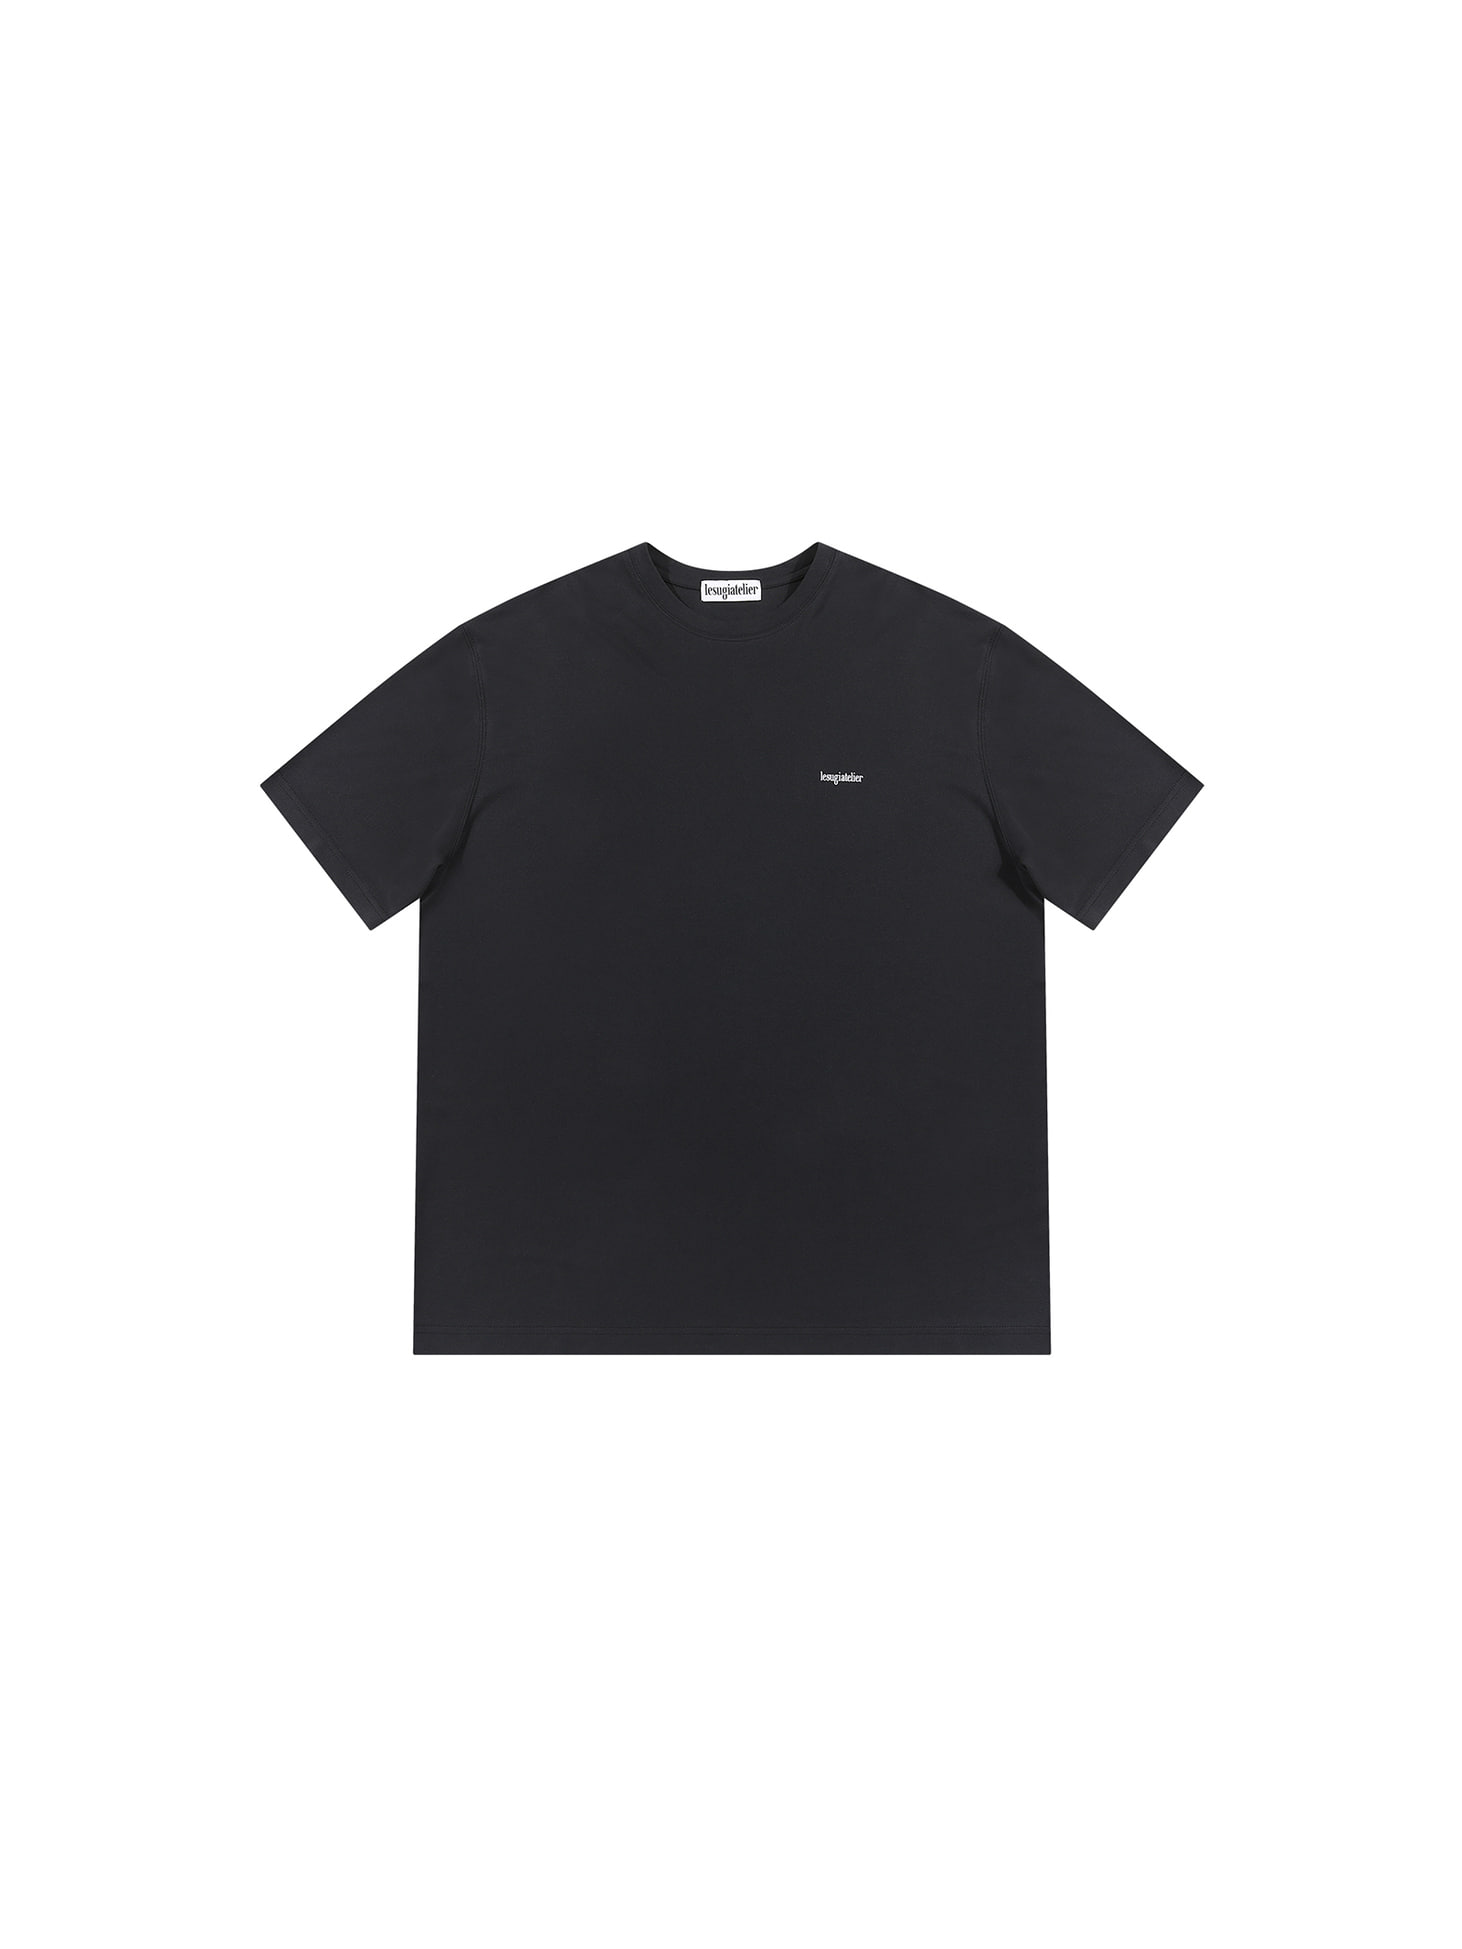 Oversized modal t-shirt / Black